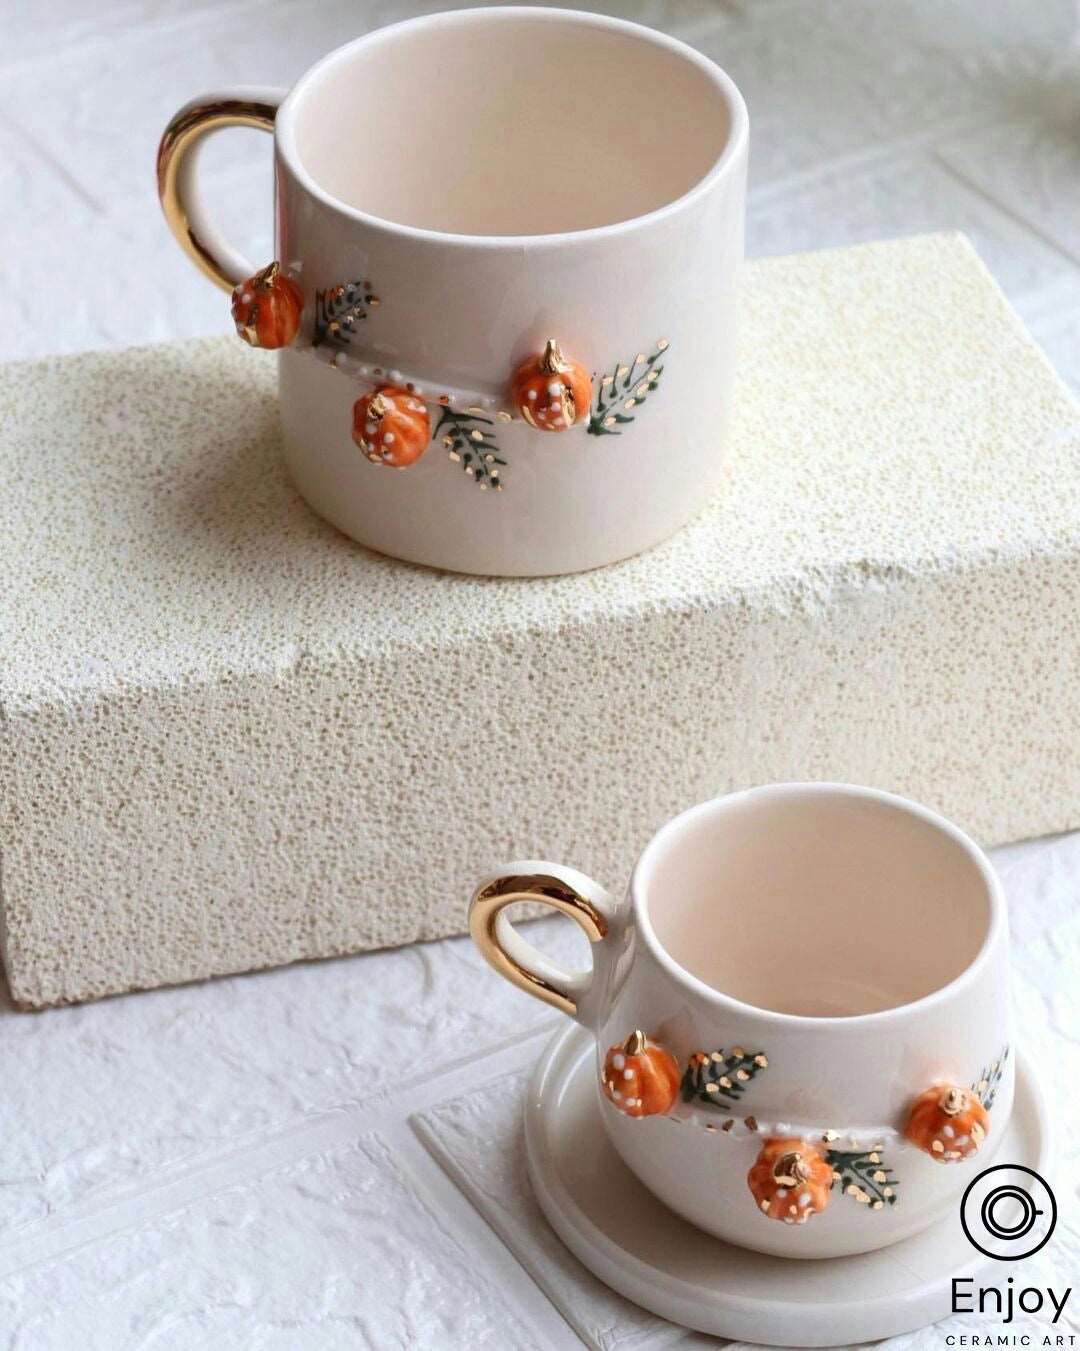 Handcrafted 'Pumpkin' Ceramic Espresso Cup & Saucer Set - 5.4oz Pumpkin Shaped Mug for Fall & Halloween Celebrations